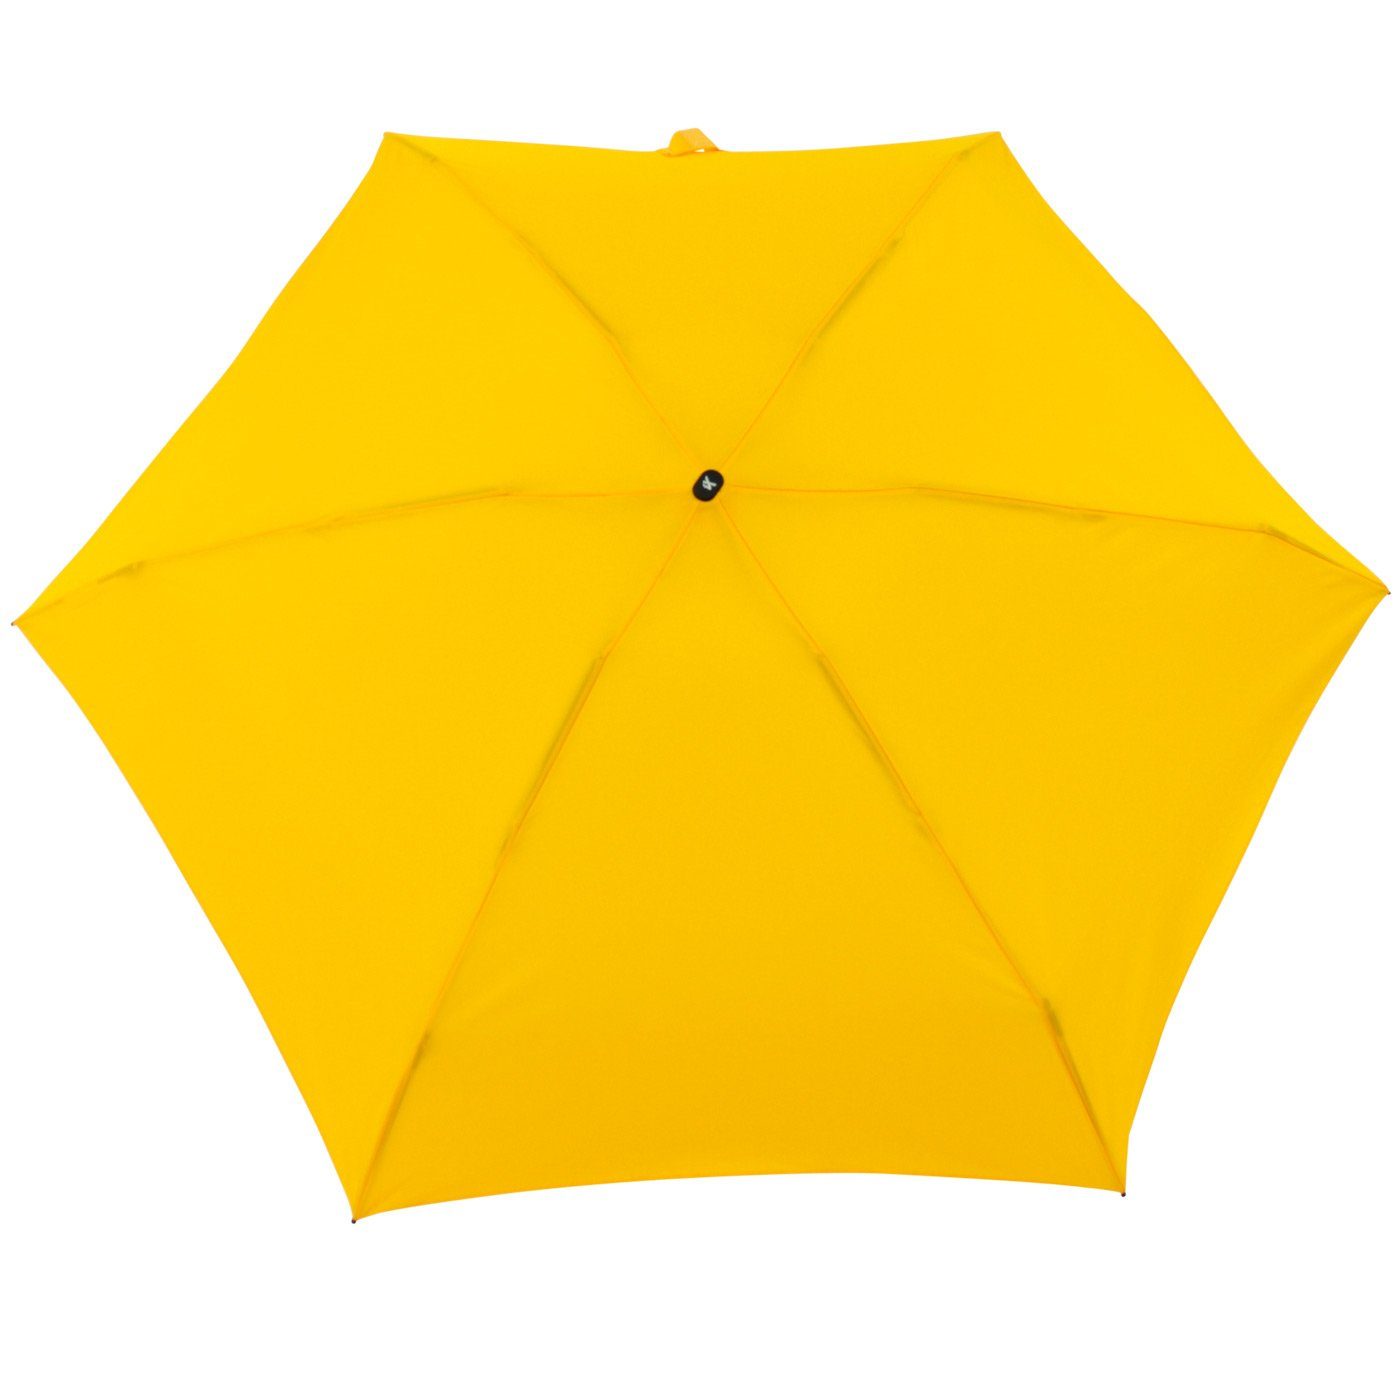 94cm 18 Taschenregenschirm cm gelb Super super-mini großem, Mini iX-brella Schirm mit kleiner